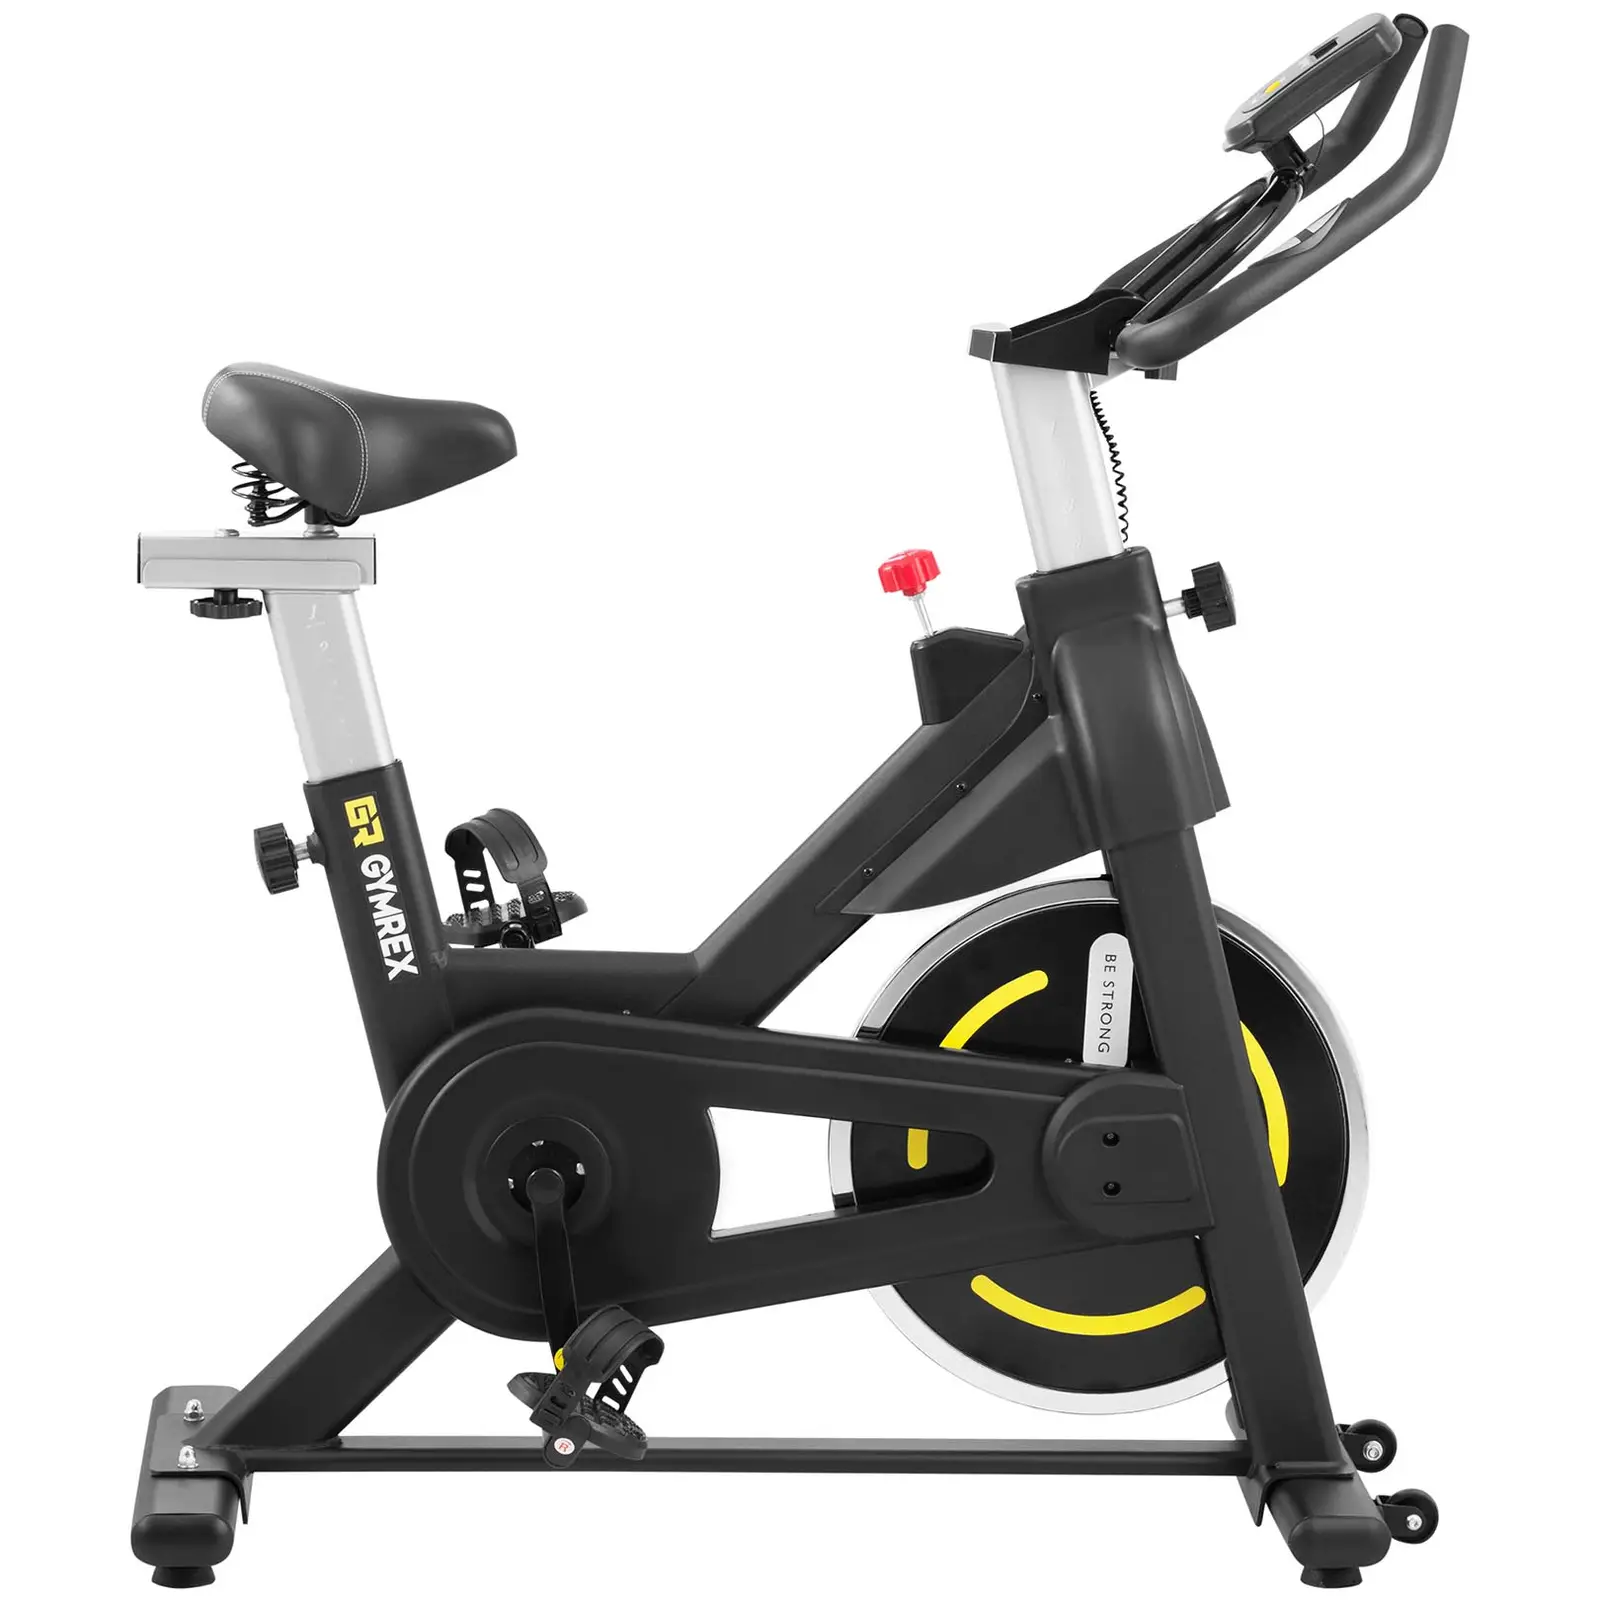 Motionscykel - Svänghjul 8 kg - Upp till 100 kg - LCD